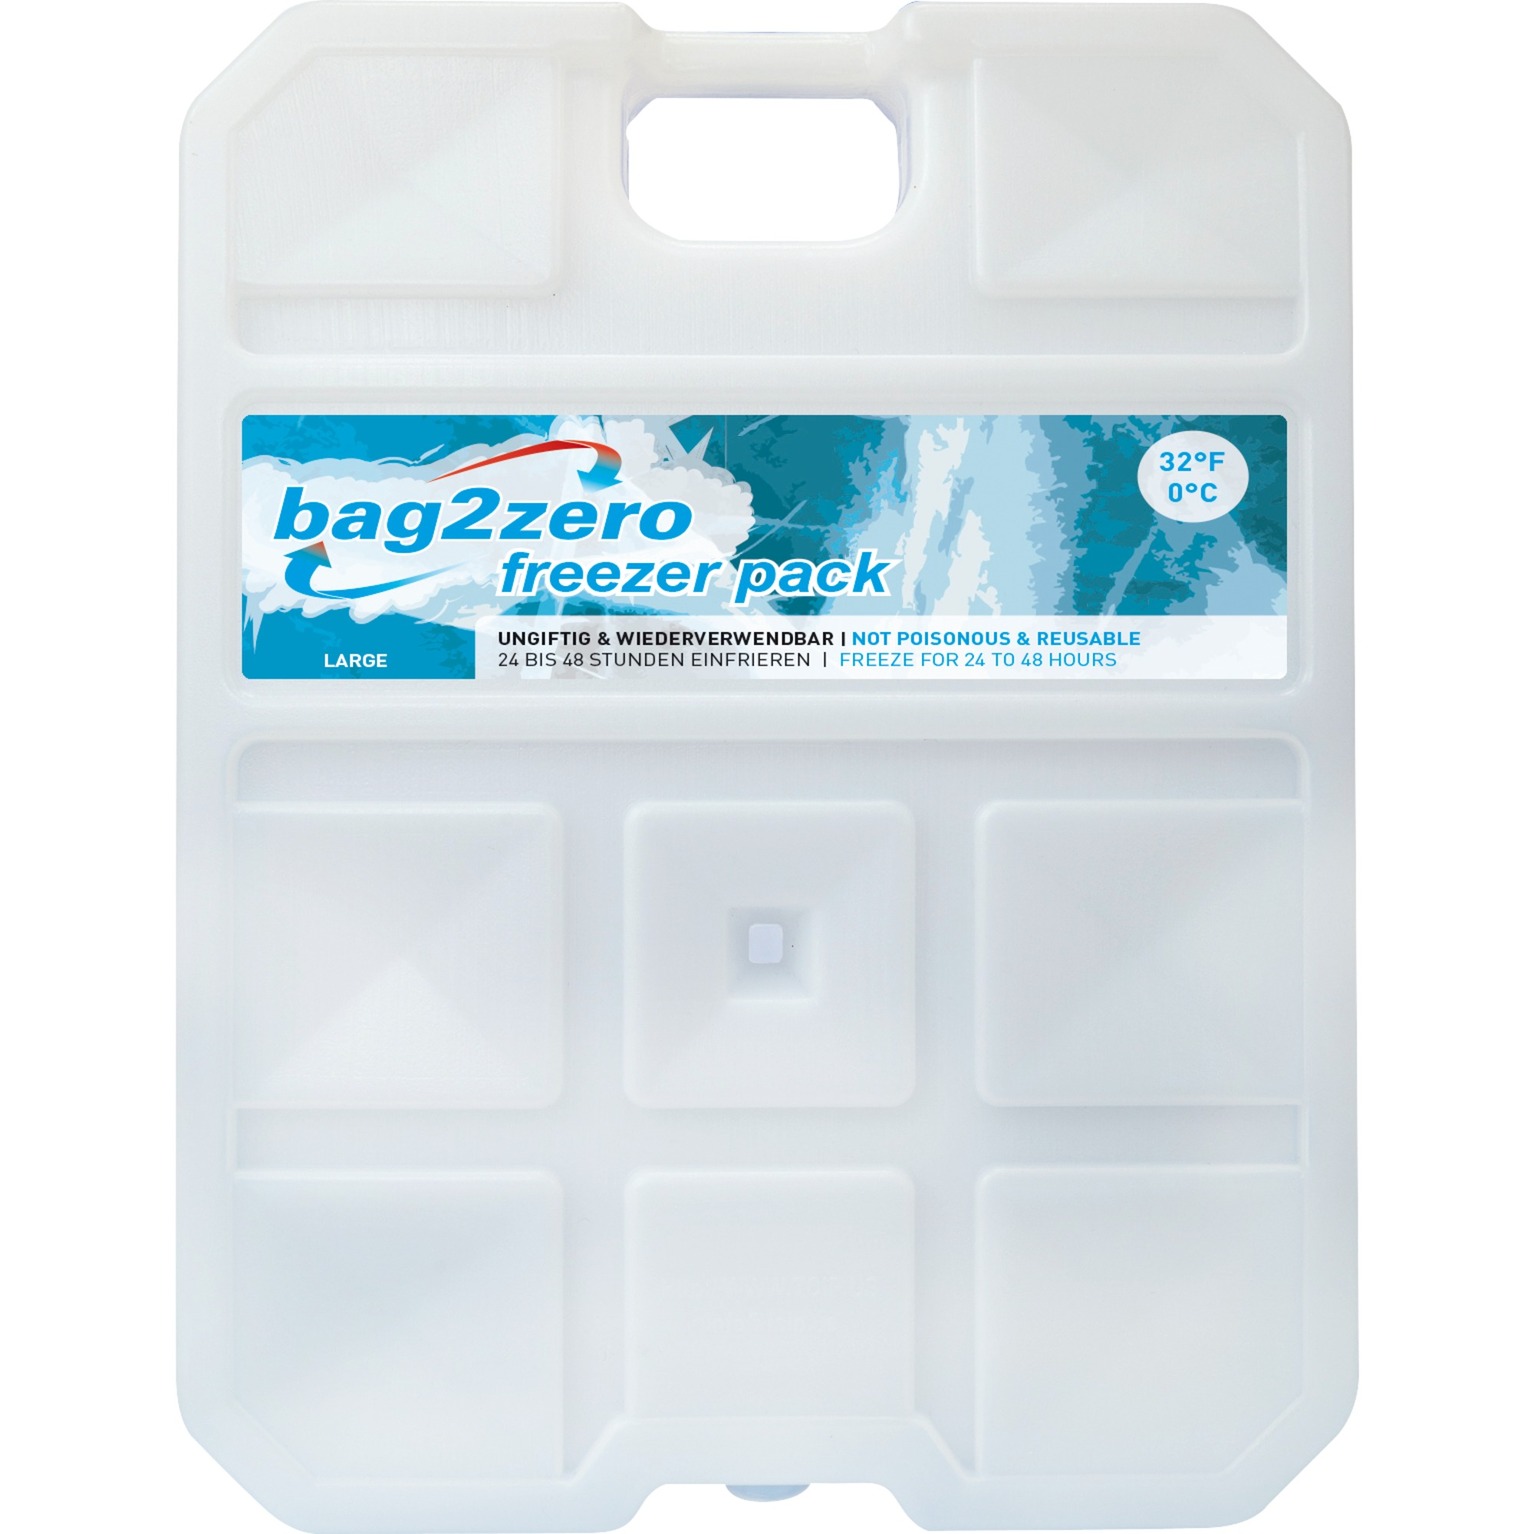 Image of Alternate - Bag2Zero Freezer Pack FP0-L, Kühlelement online einkaufen bei Alternate